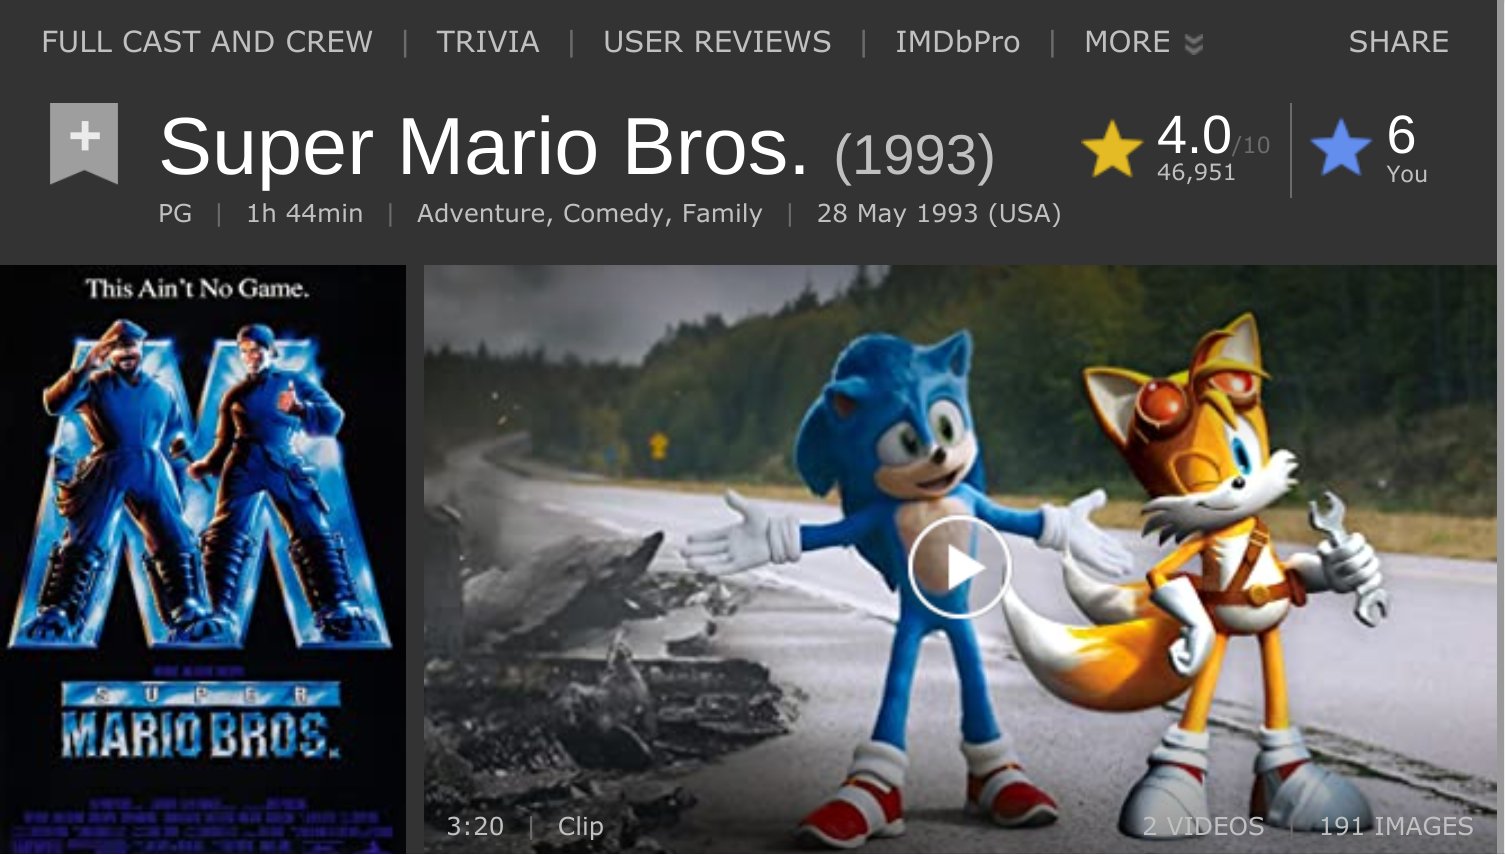 Reviews: Sonic the Hedgehog 2 - IMDb